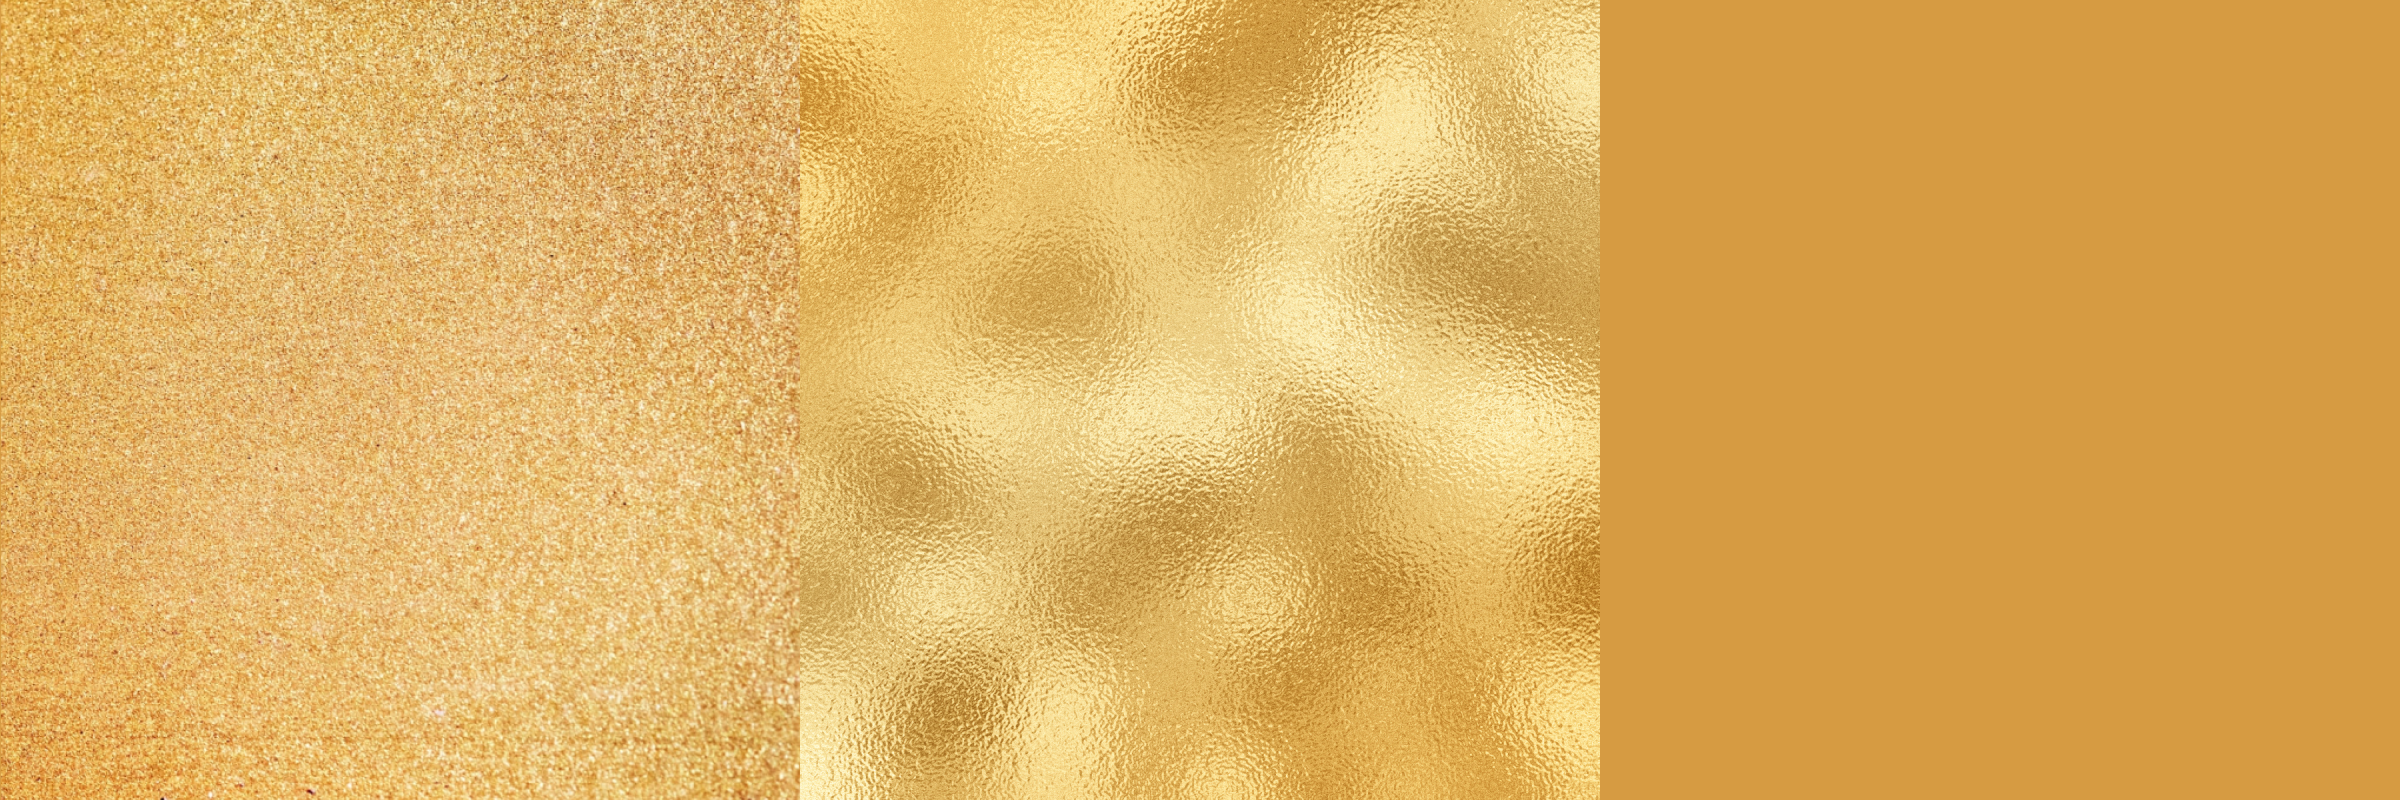 Textura zlata